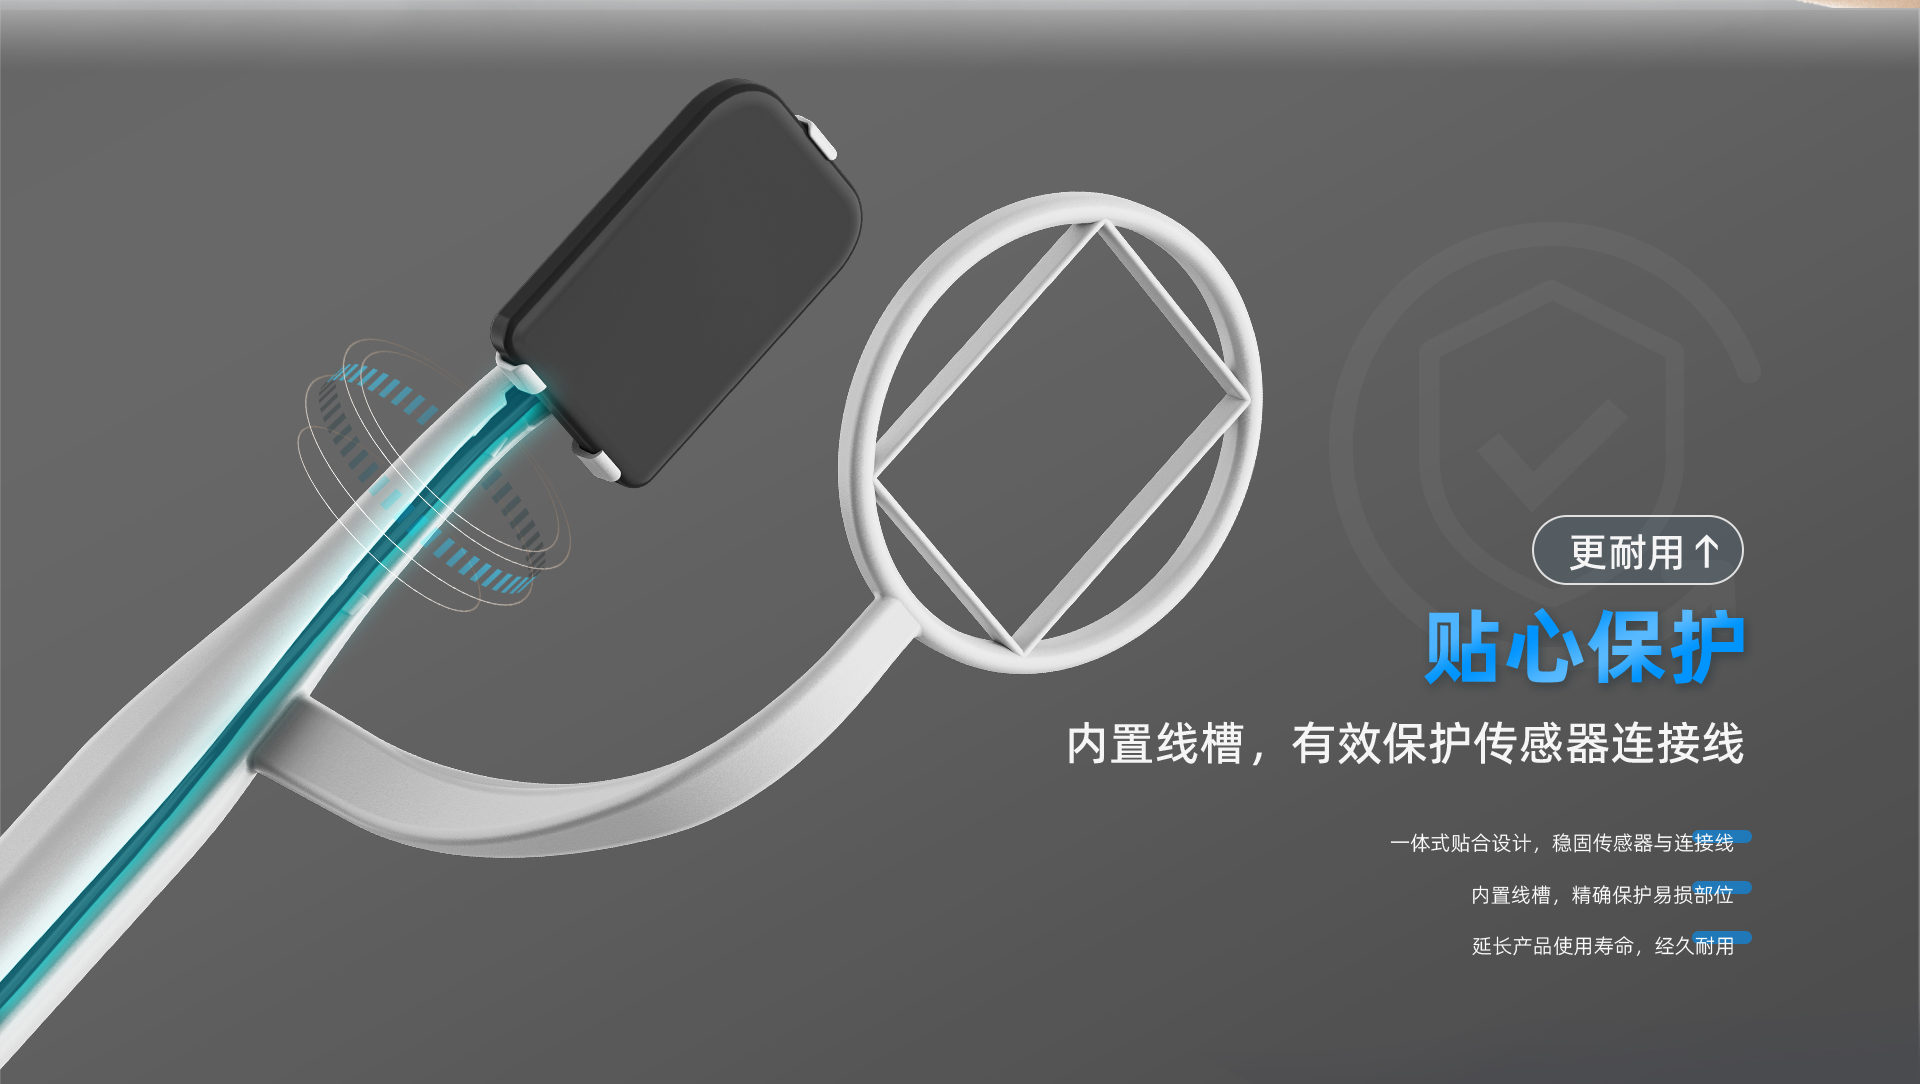 口内传感器支架产品介绍---网站中文_05.jpg